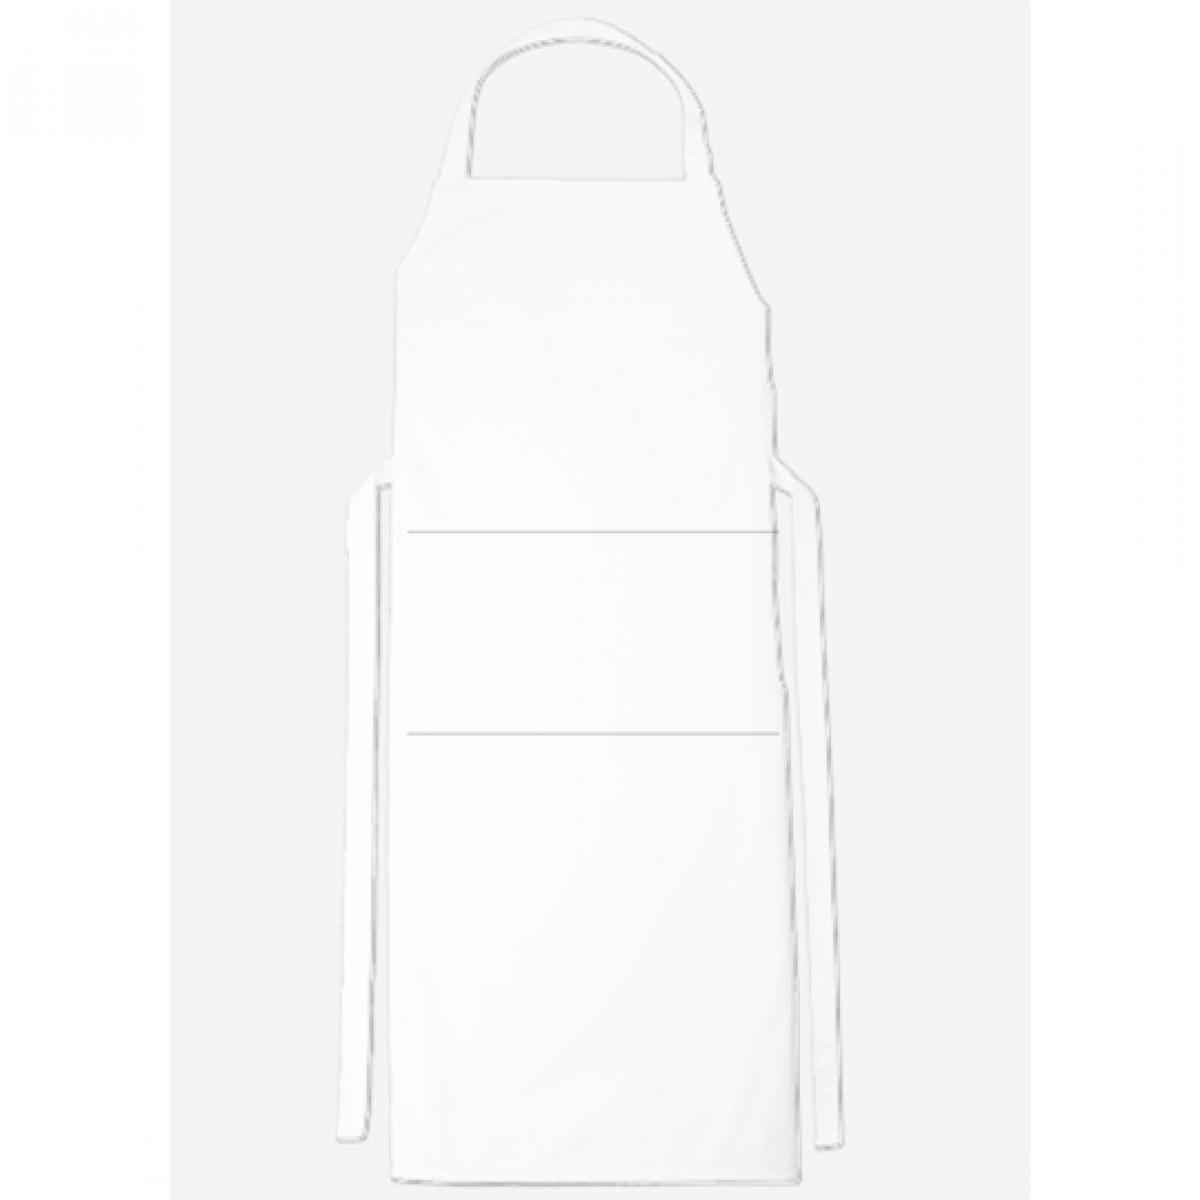 Hersteller: CG Workwear Herstellernummer: 01146-01 Artikelbezeichnung: Latzschürze Verona Classic Bag 90 x 75 cm Farbe: White